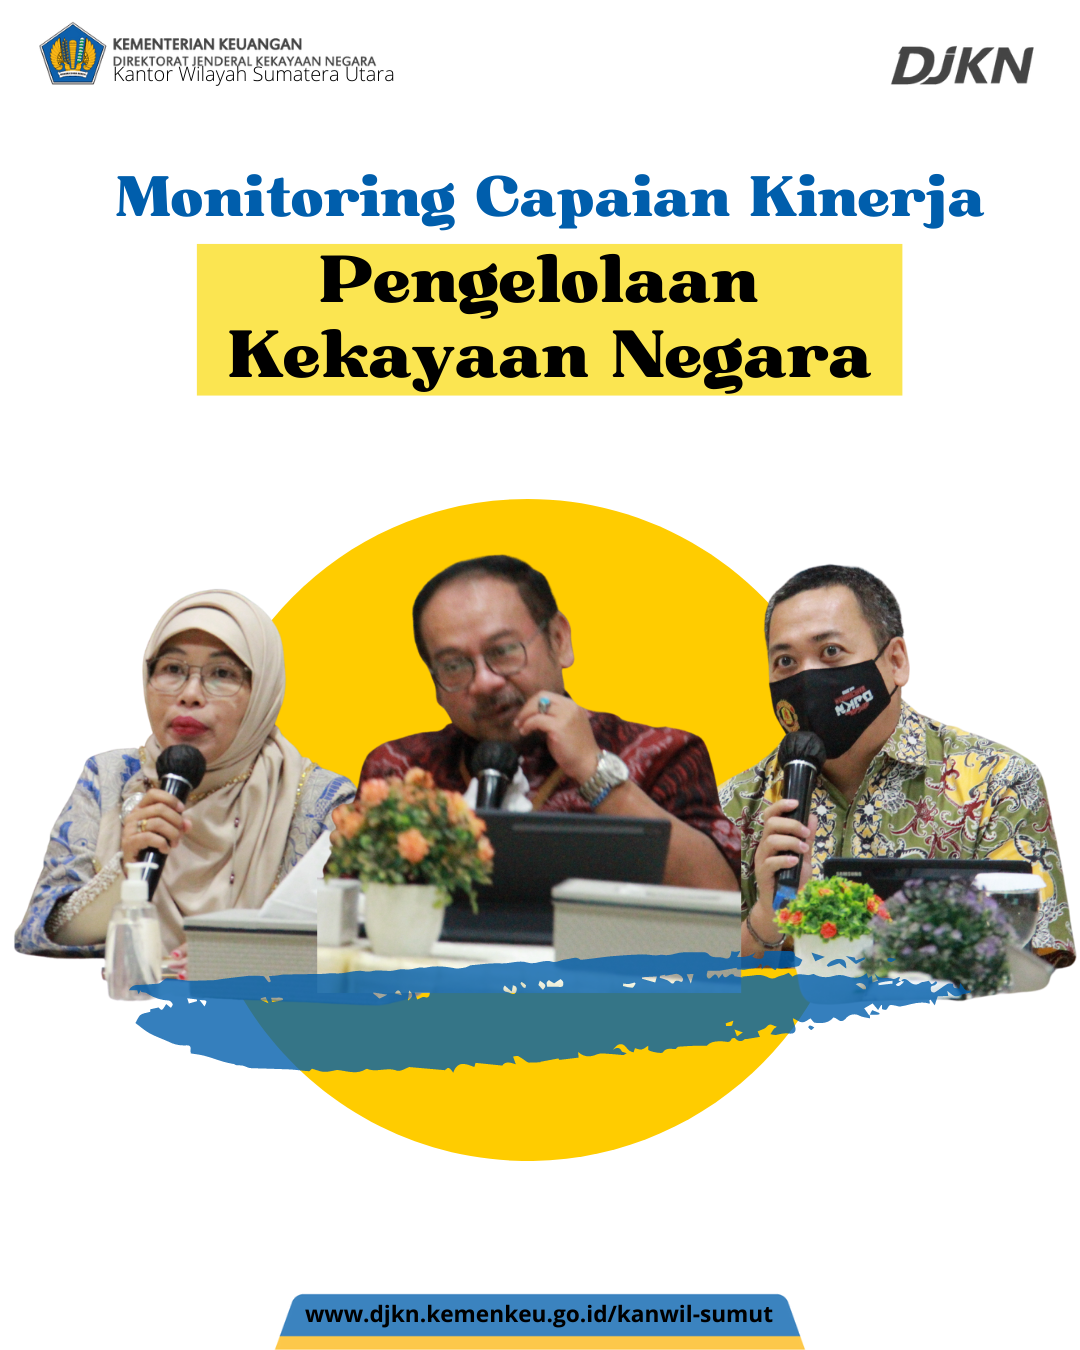 Monitoring Kinerja, IKU PKN Kanwil DJKN Sumatera Utara Optimis Tercapai di Atas 100%